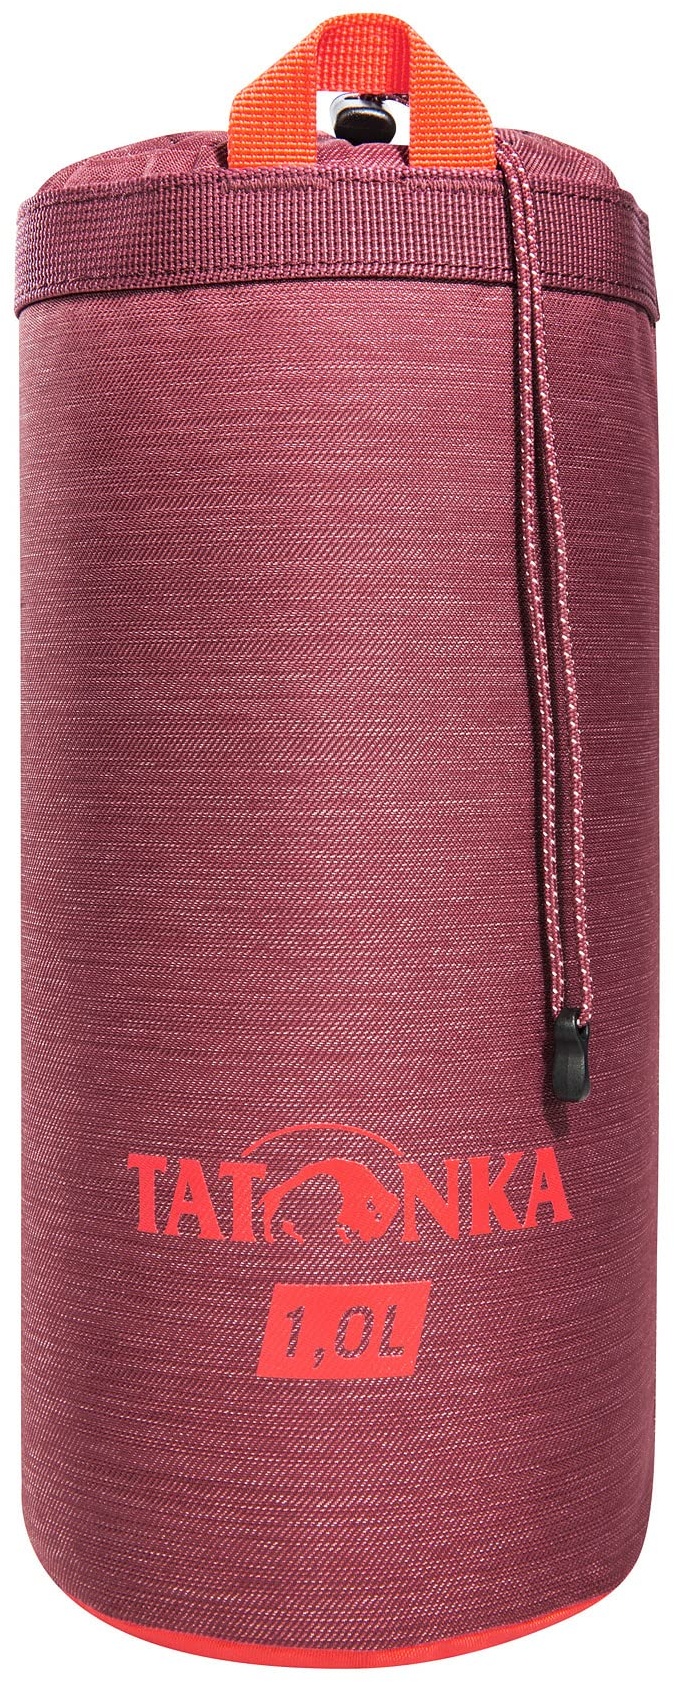 Tatonka Thermo Bottle Cover 1L - Isolierende Schutzhülle für Trinkflaschen mit einem Volumen von 1 Liter - Bordeaux red